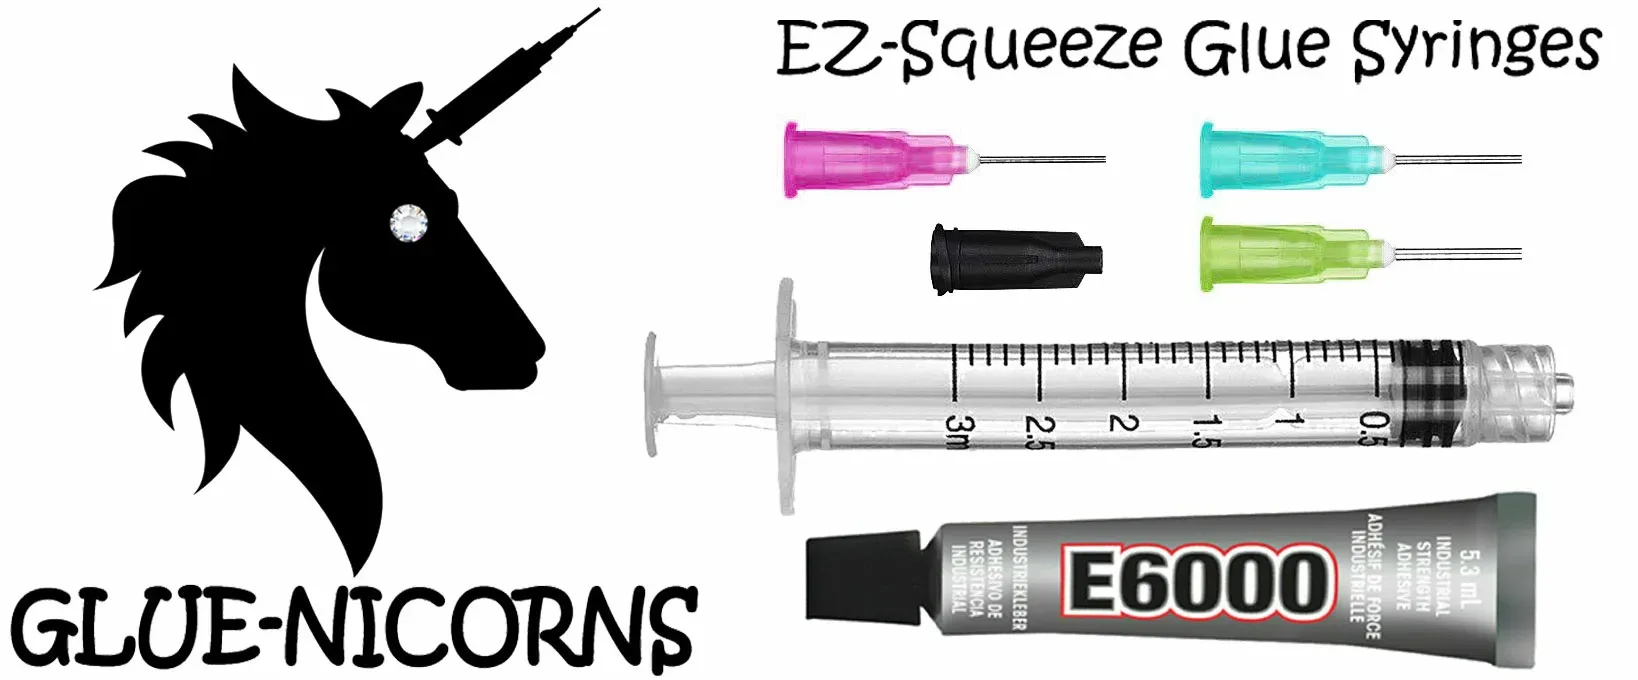 Glue Syringes